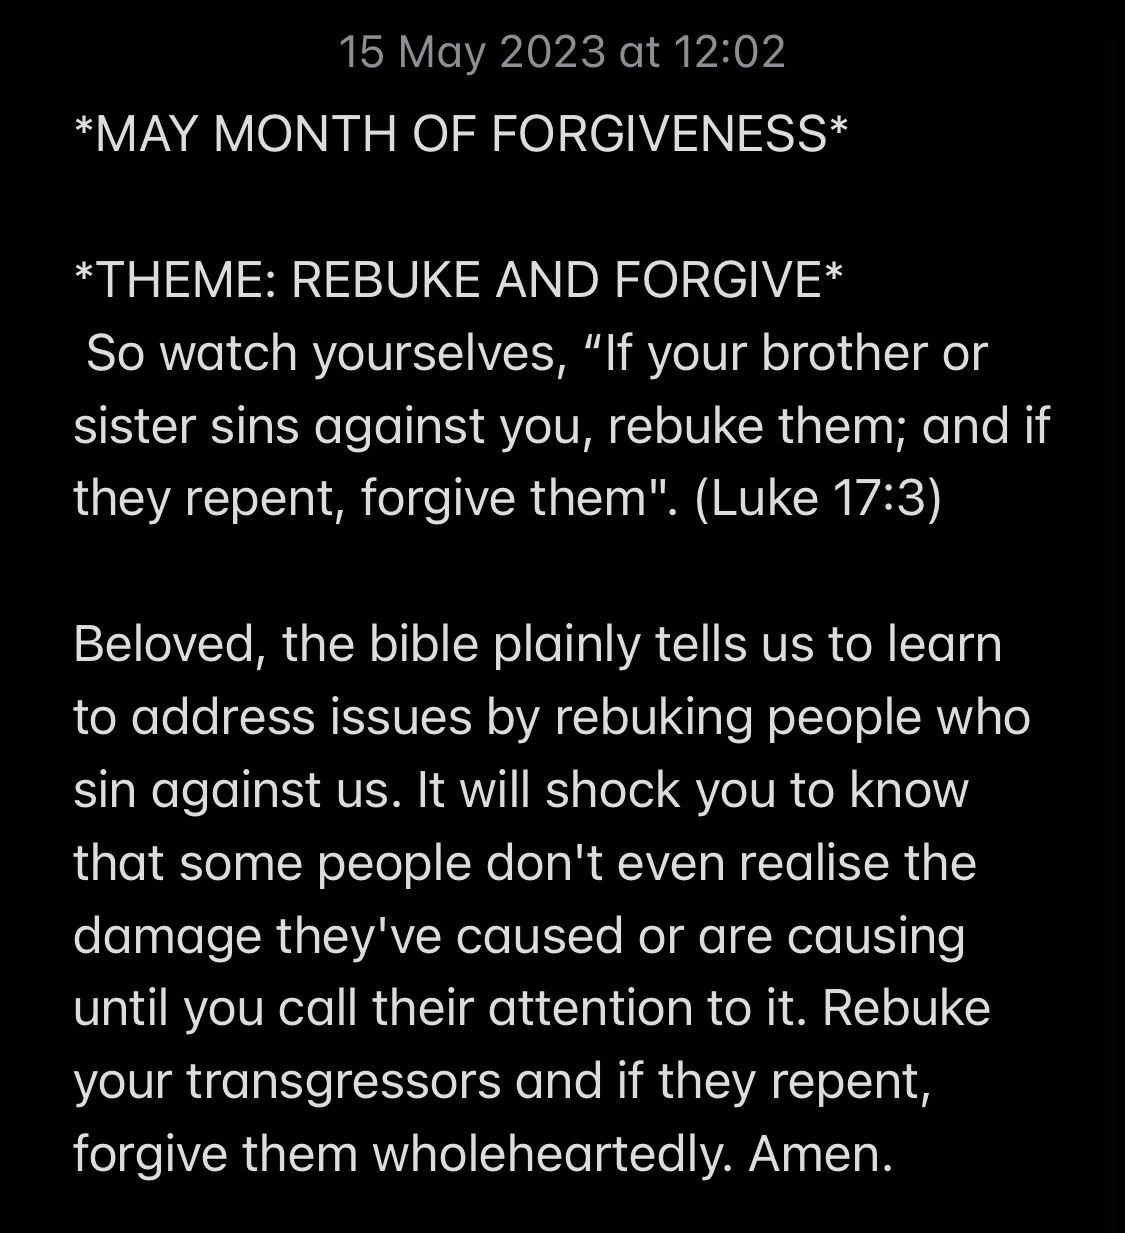 REBUKE AND FORGIVE